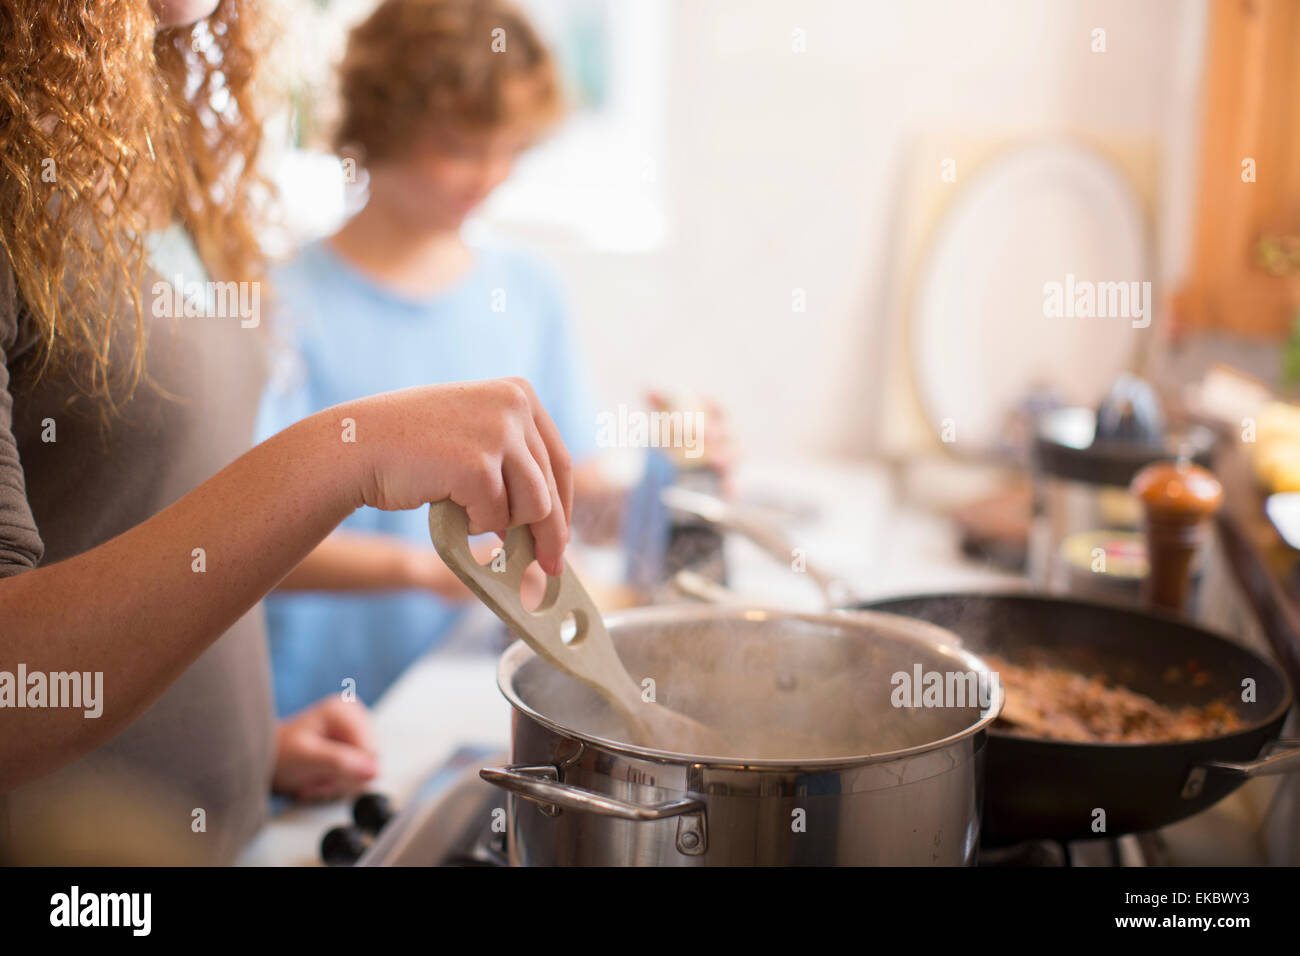 Frères et sœurs cooking in kitchen Banque D'Images